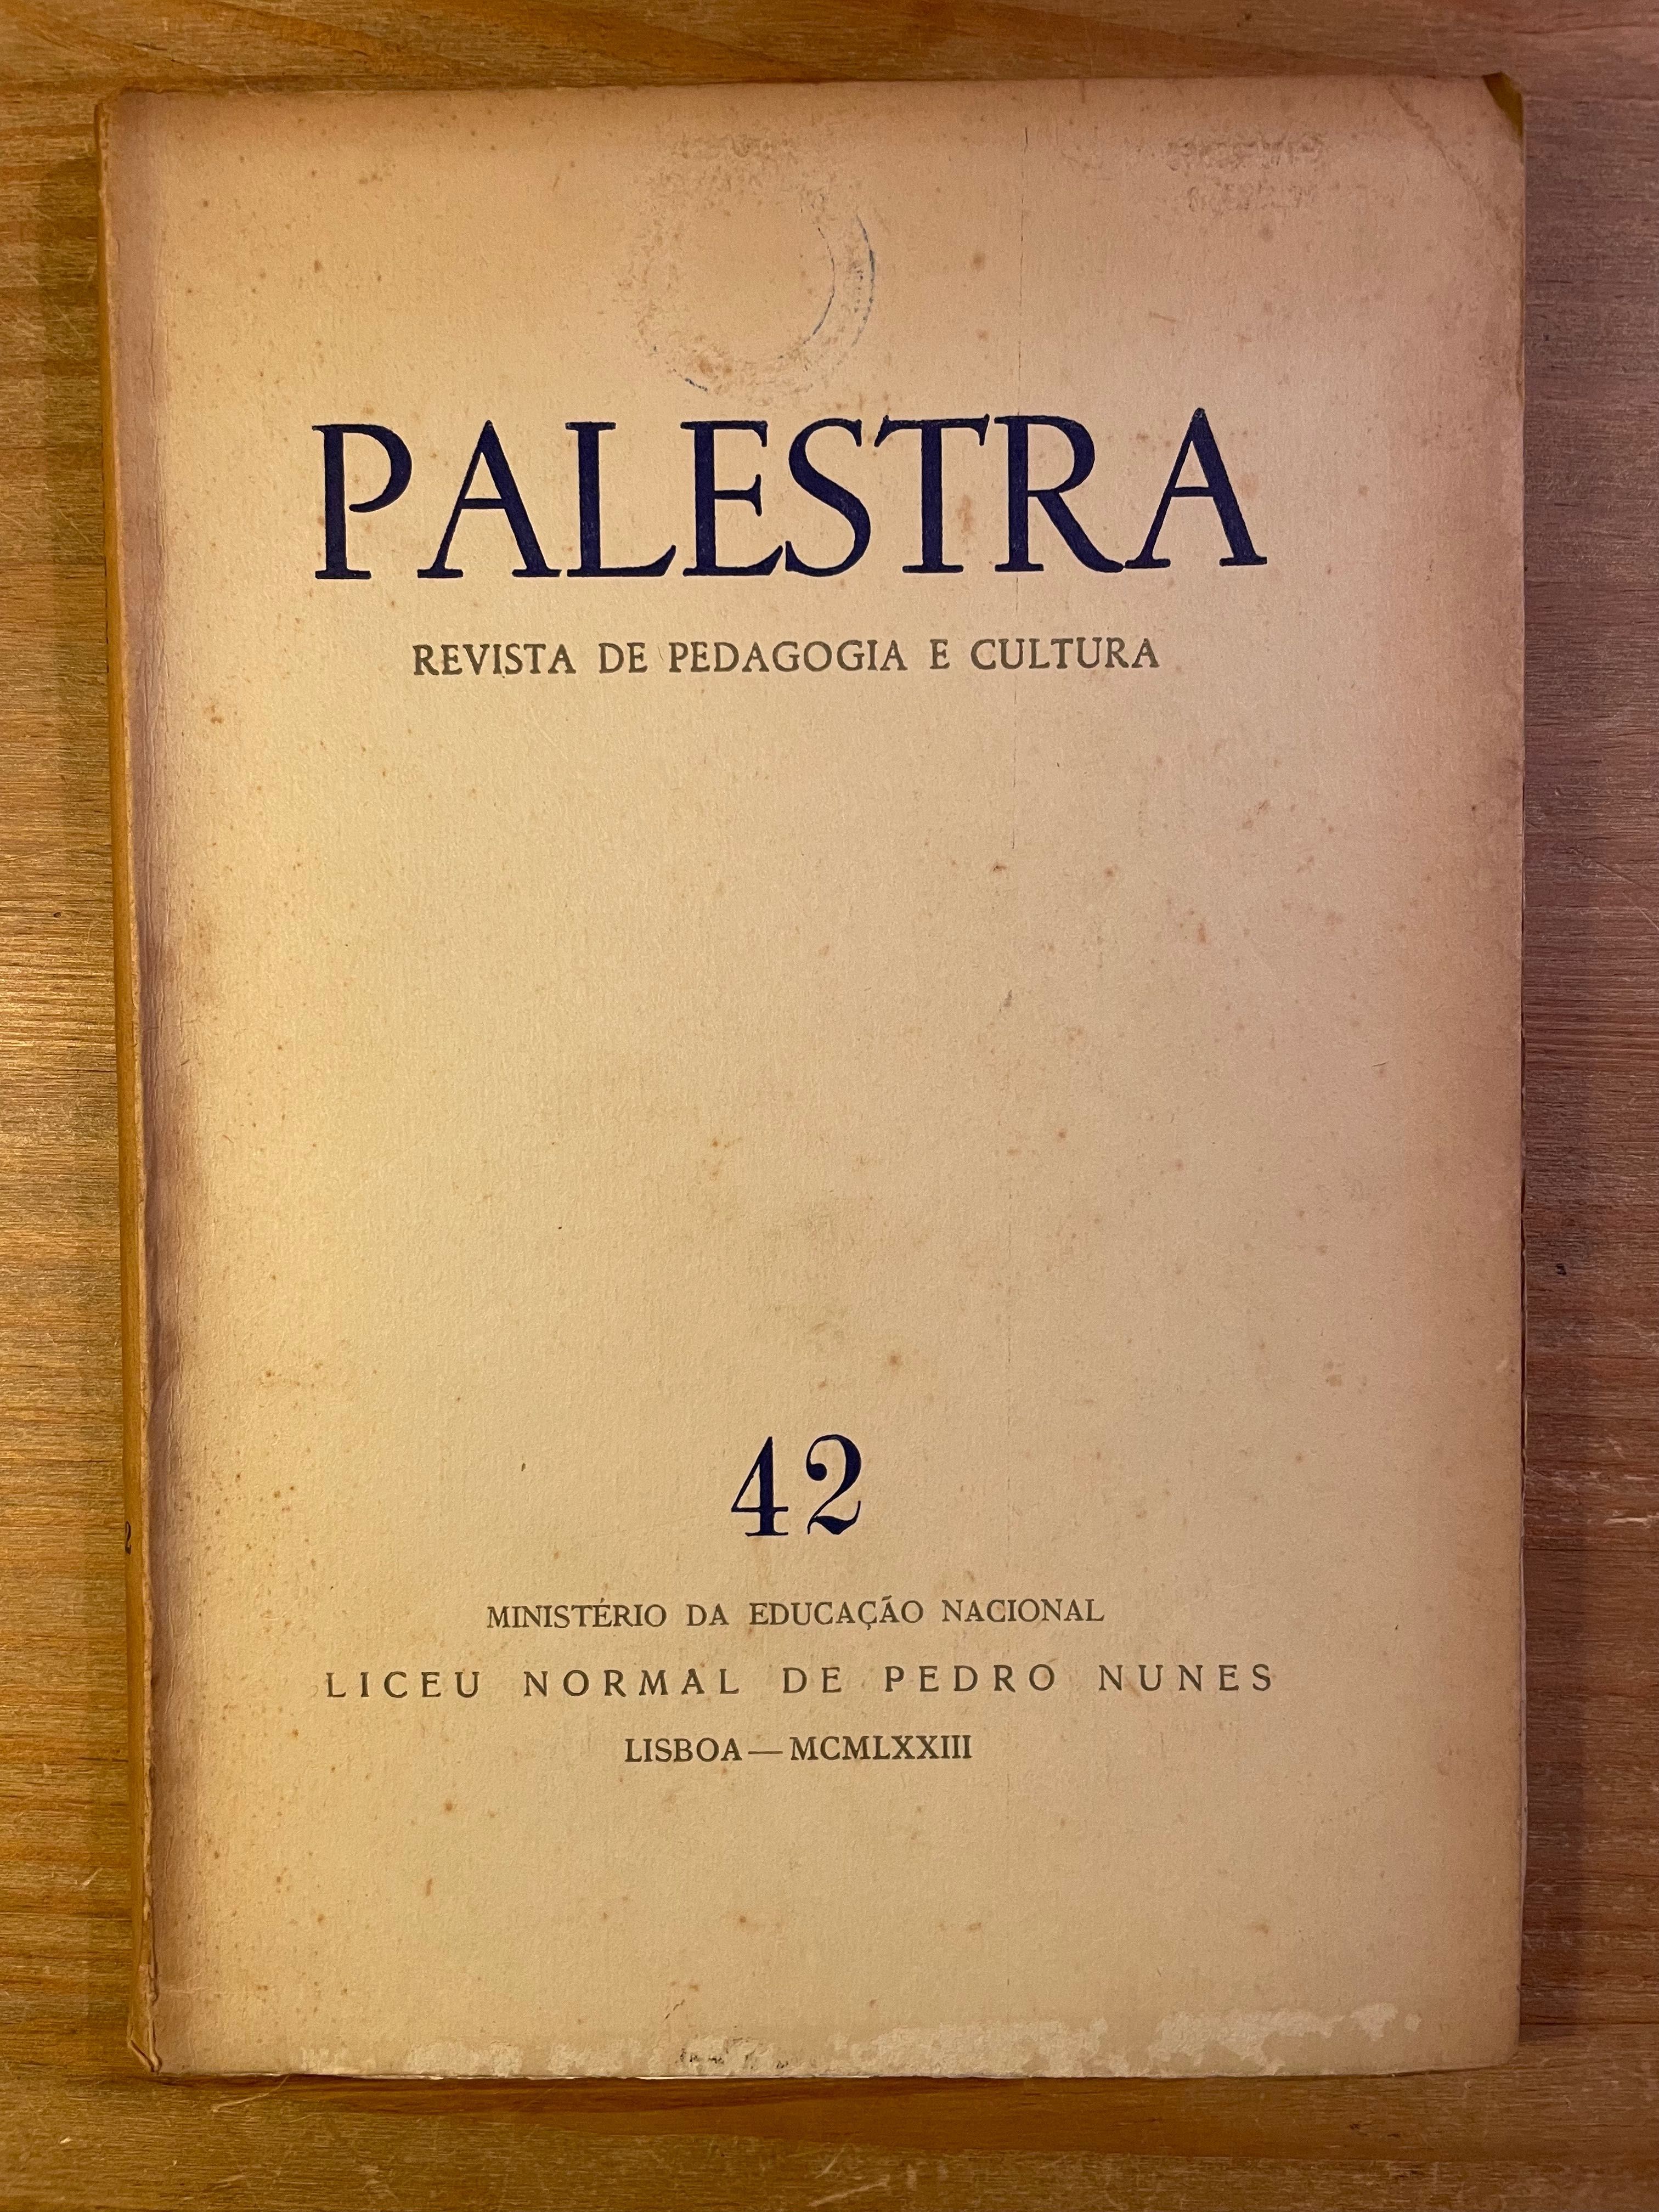 Palestra - Revista de Pedagogia e Cultura - 1972 (portes grátis)